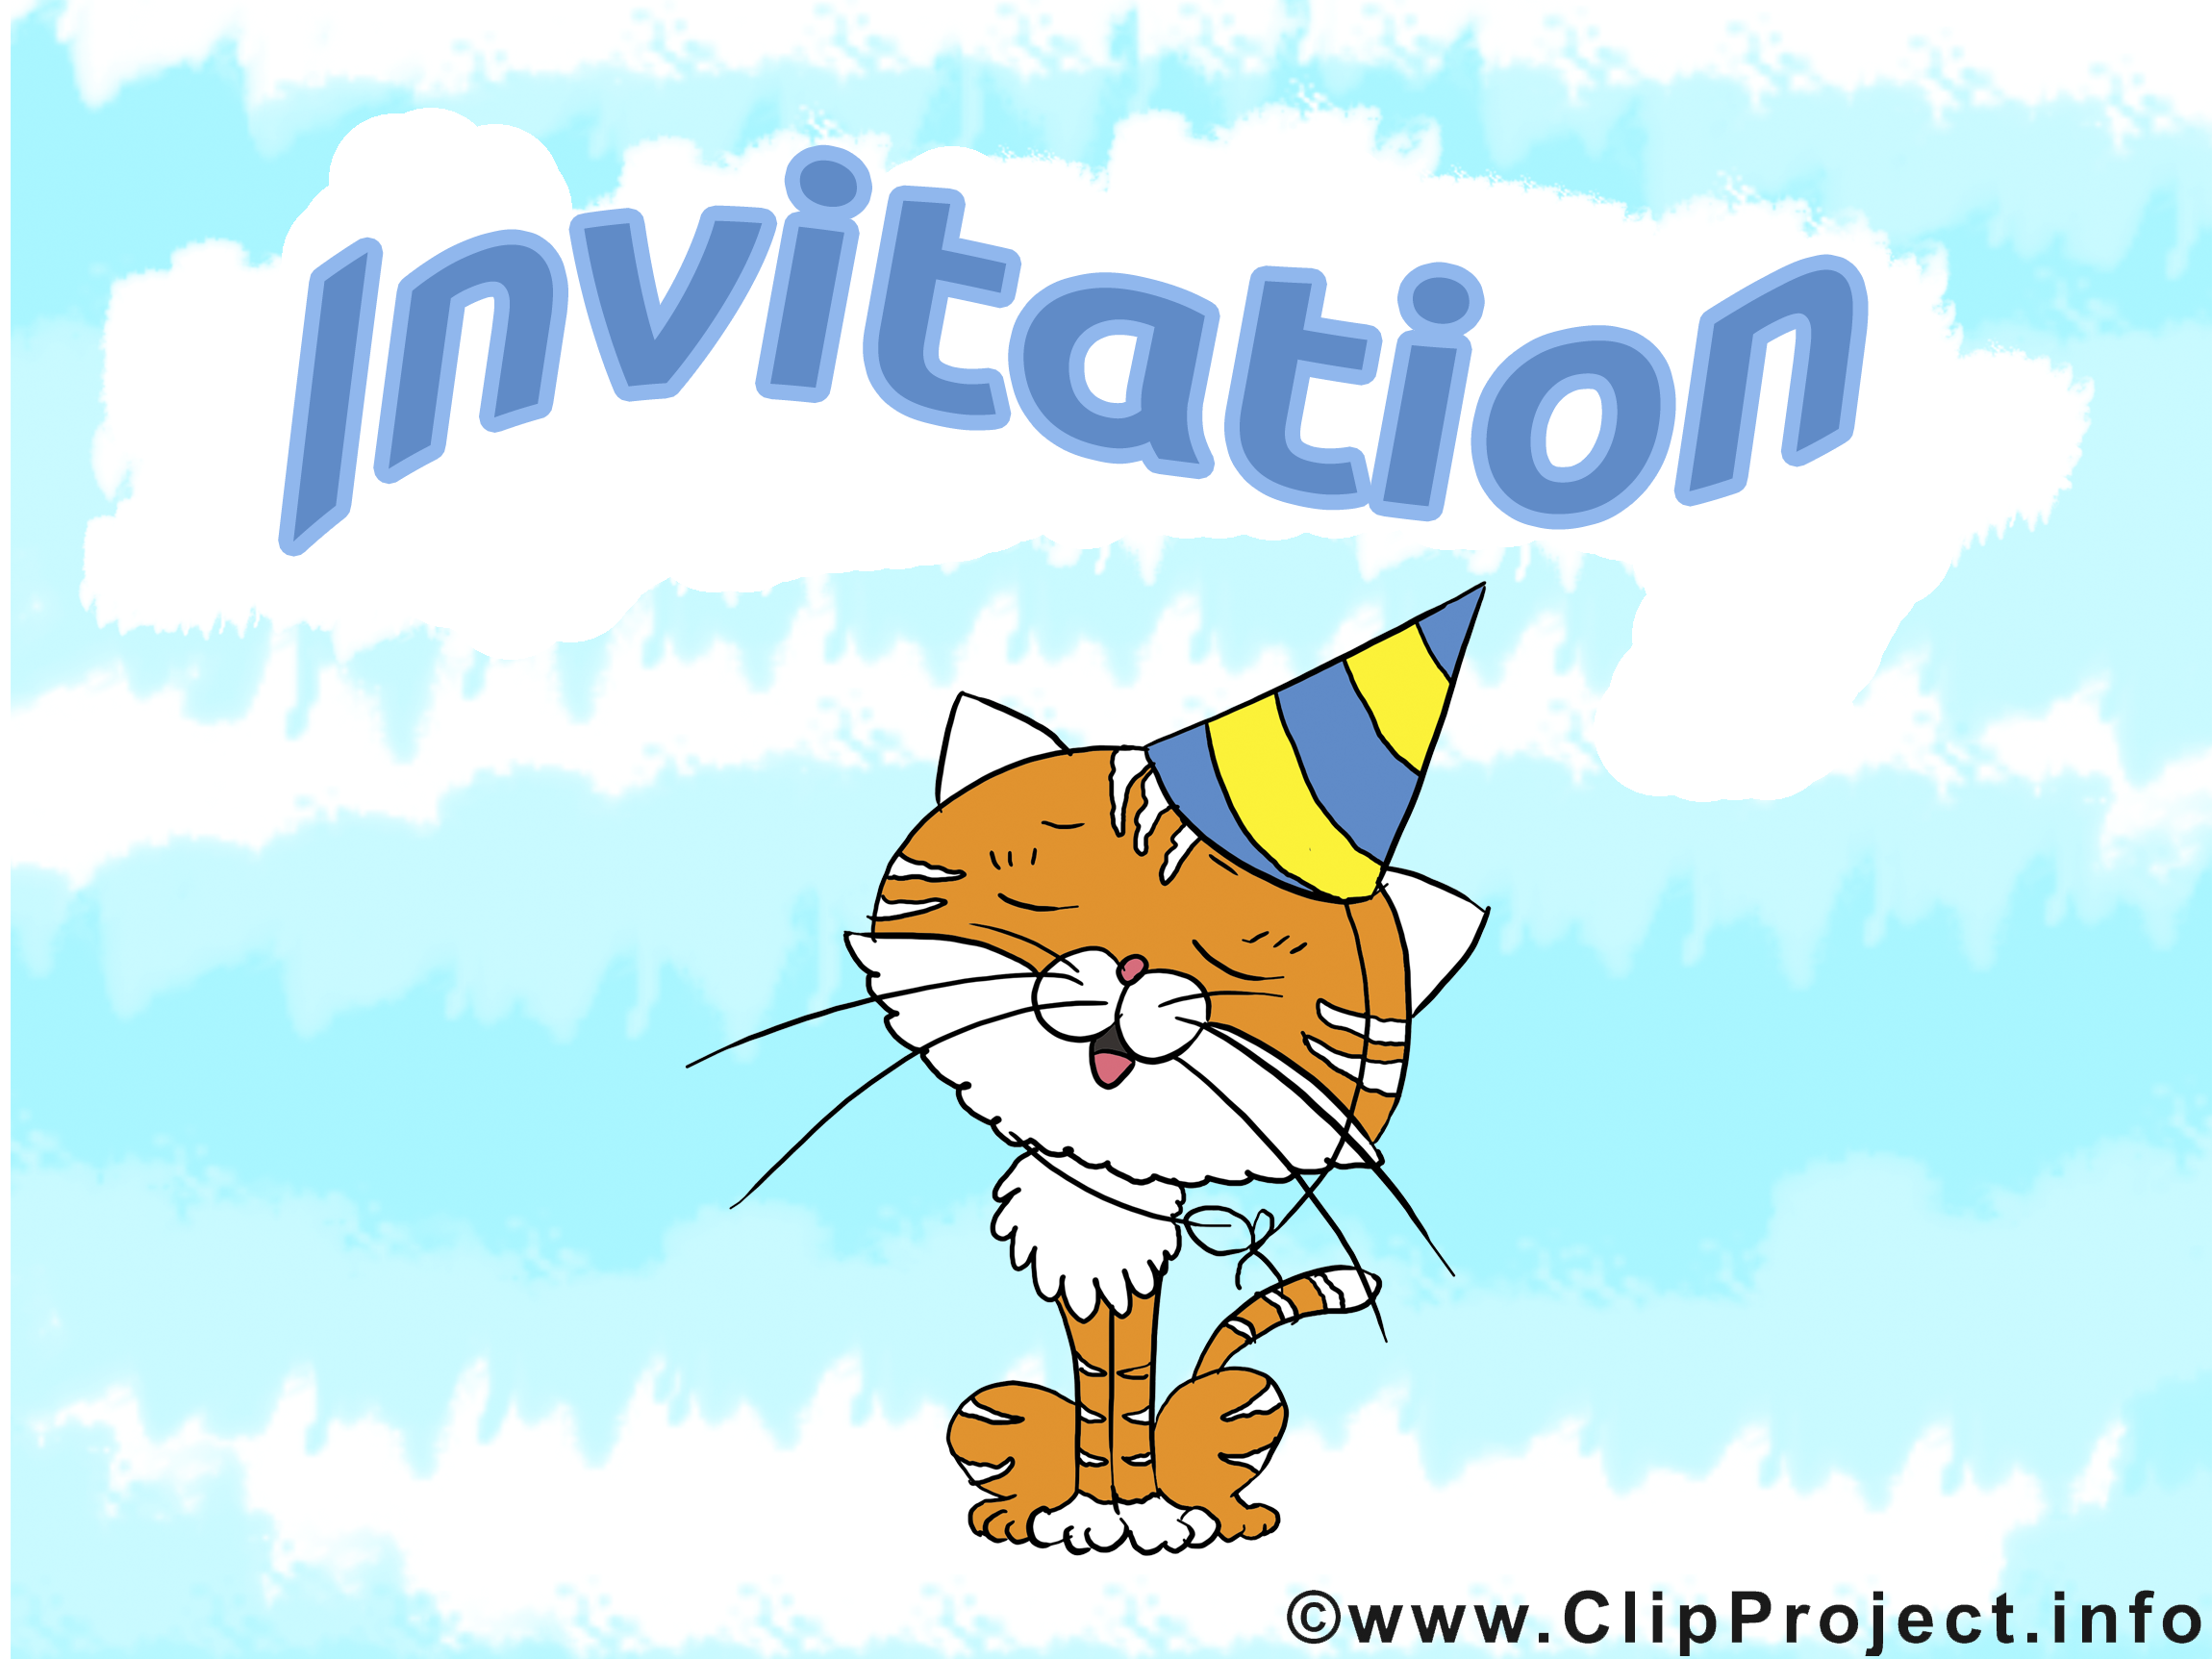 clipart gratuit invitation - photo #16